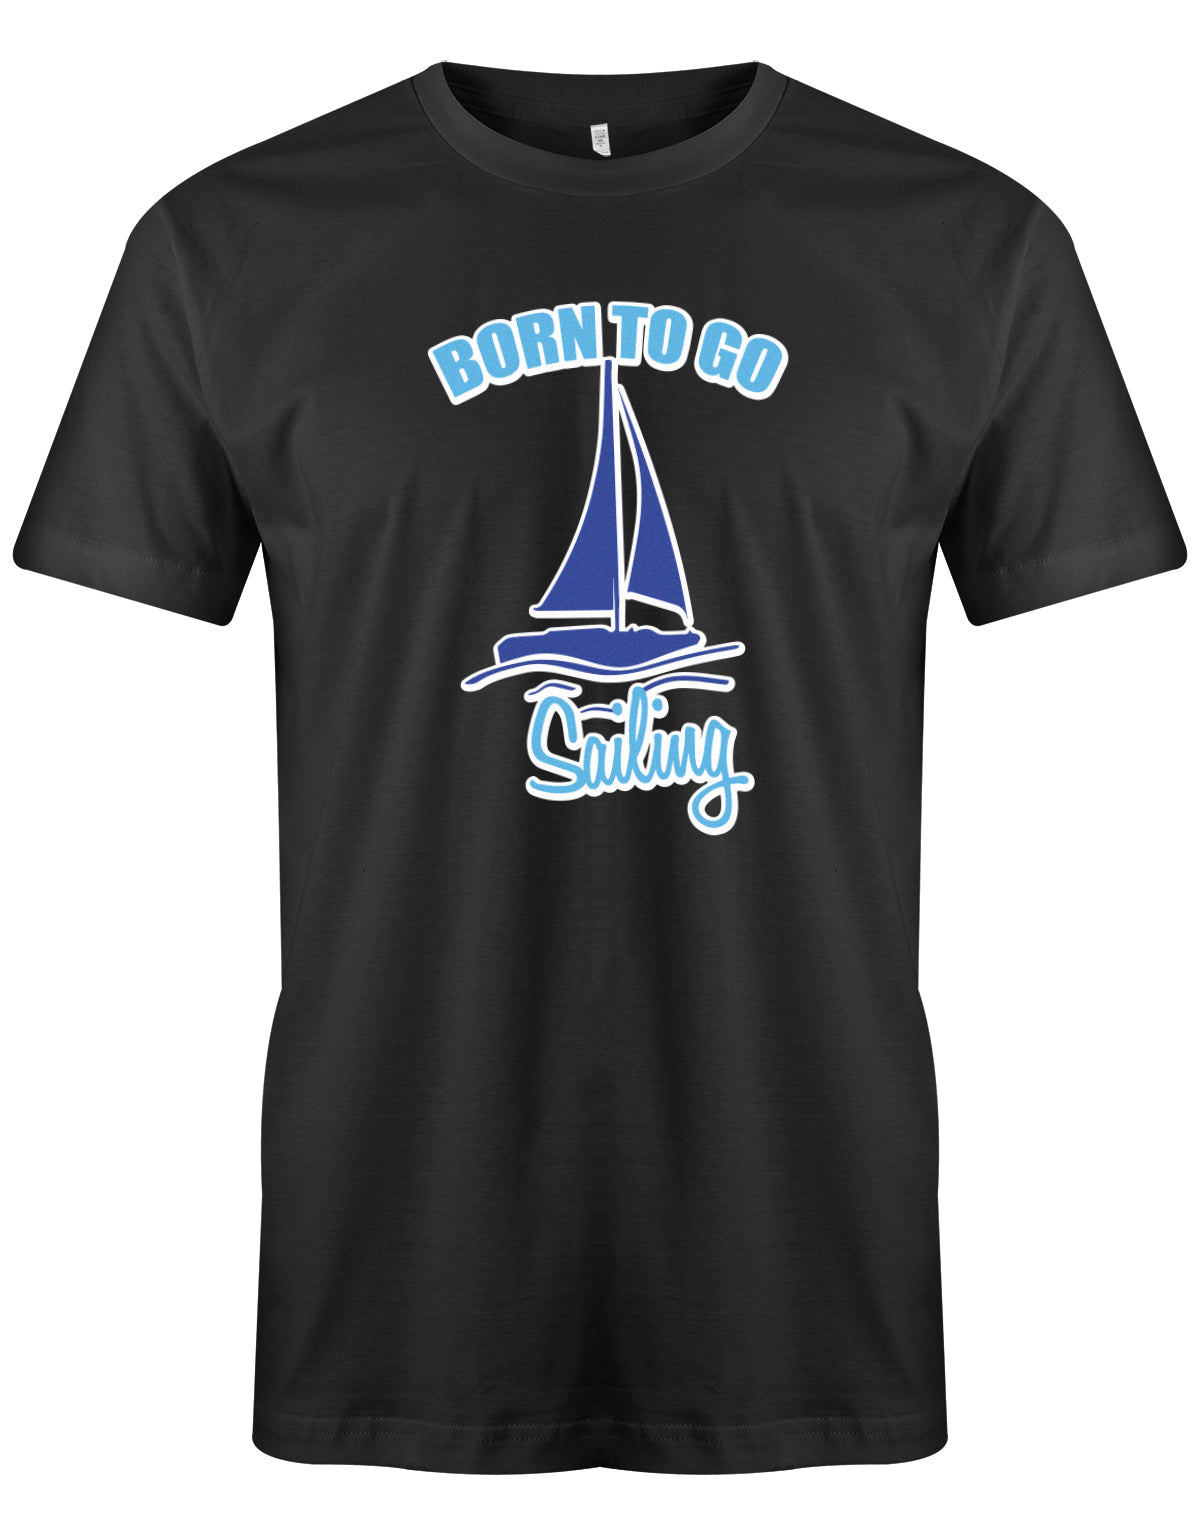 Das Segler t-shirt bedruckt mit "Born to go sailing - geboren um segeln zu gehen". Schwarz